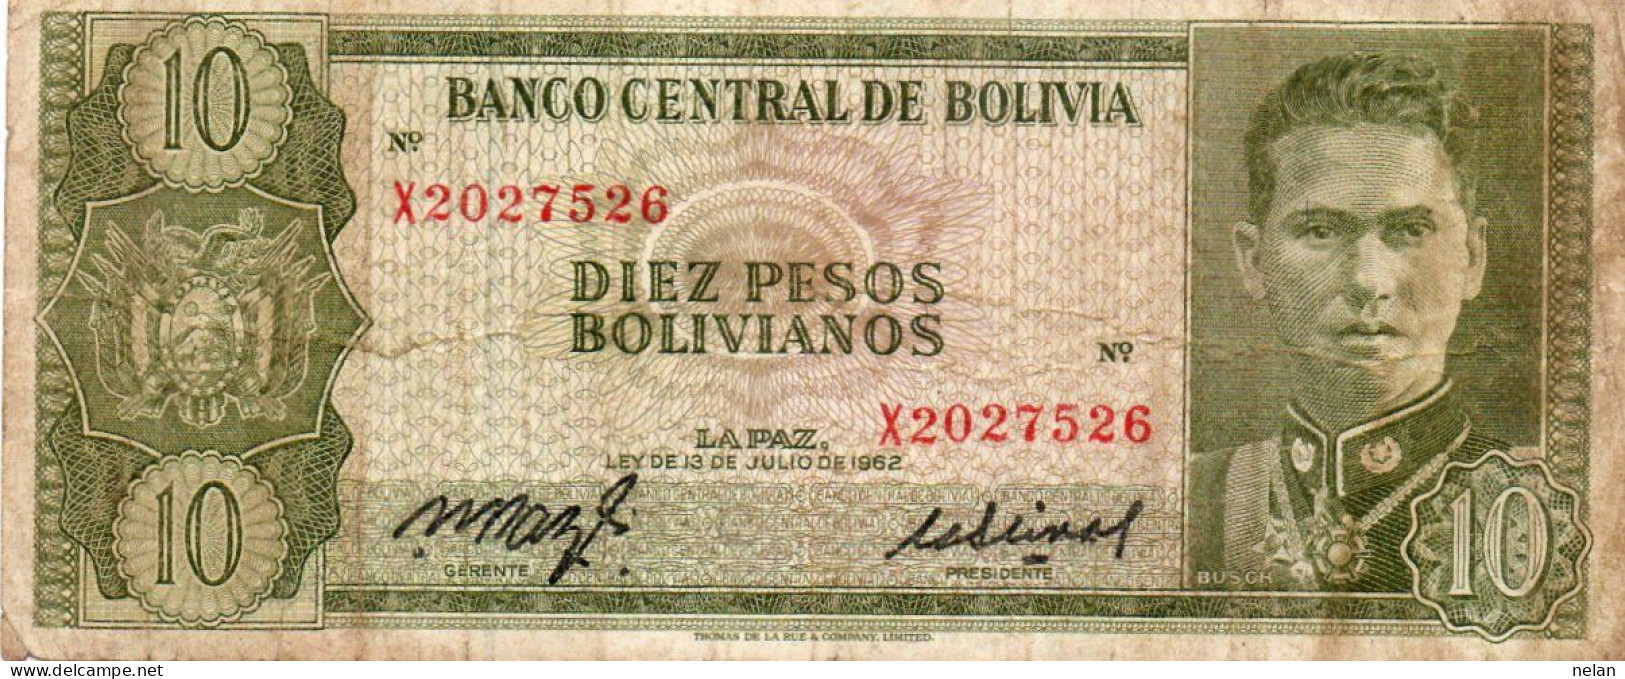 BOLIVIA 10 PESOS BOLIVIANOS 1962 - P-154a.16 CIRC. - Bolivië